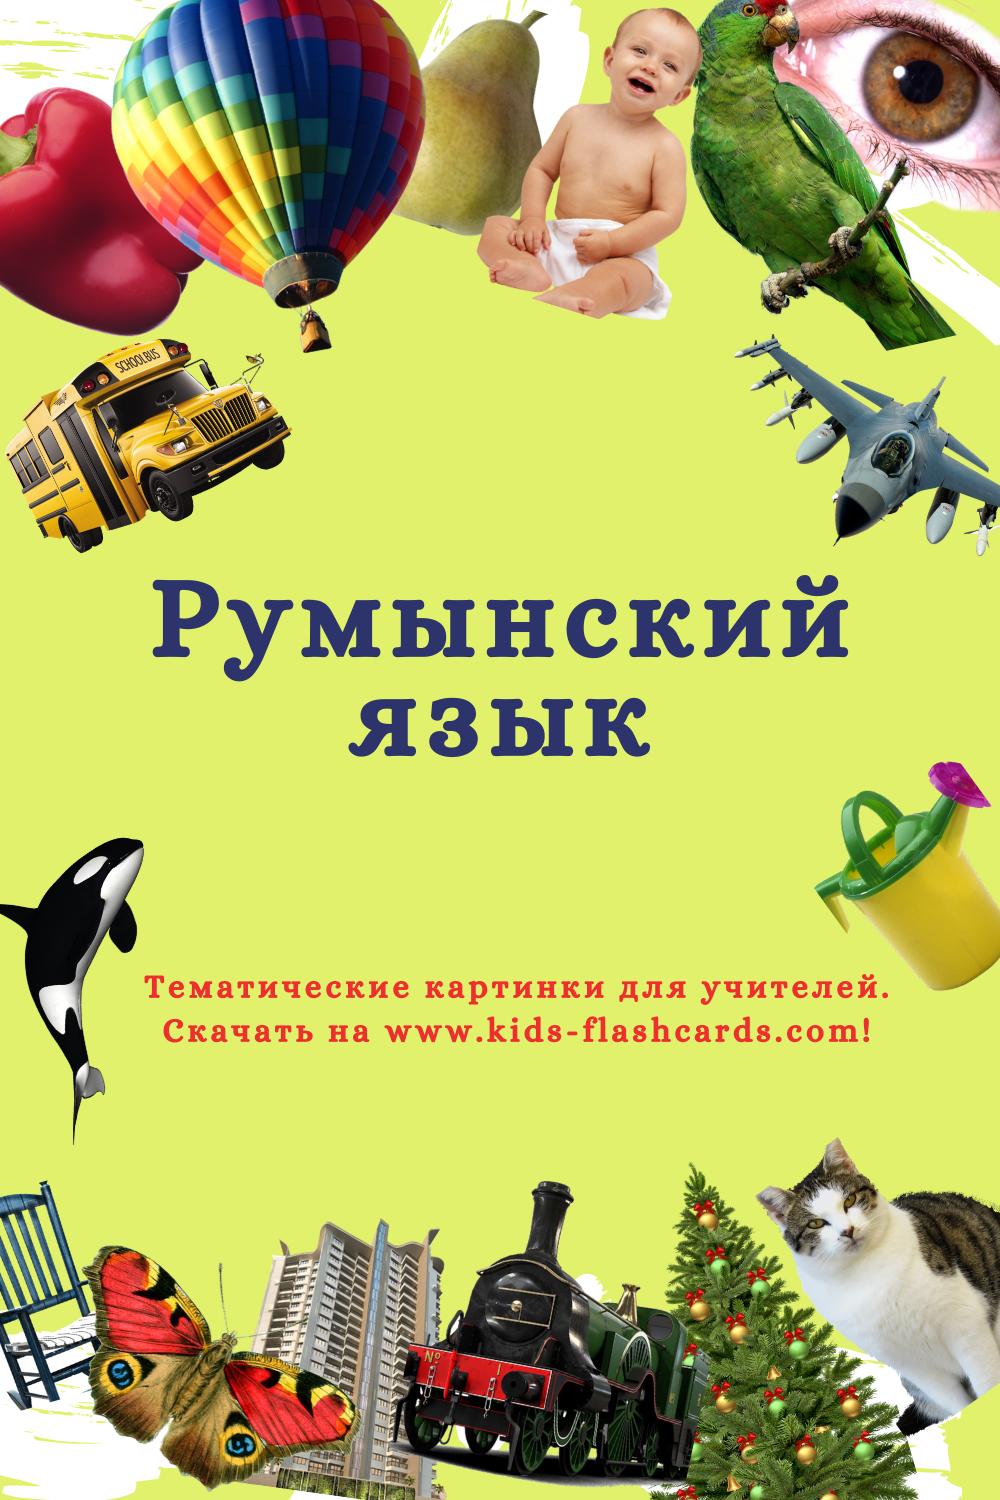 Румынский язык - распечатки для детей